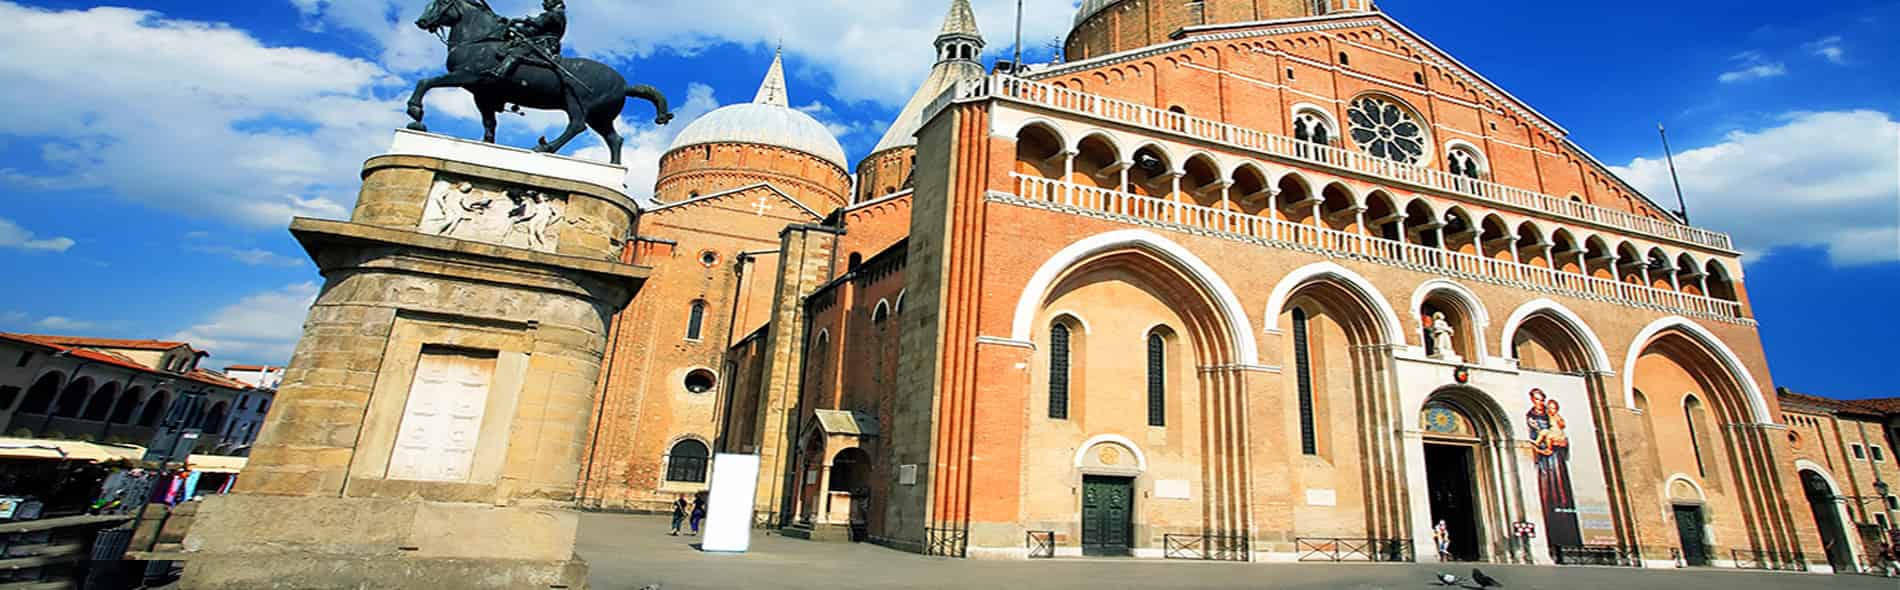 Tour e Visita guidata nella Basilica di Sant’Antonio